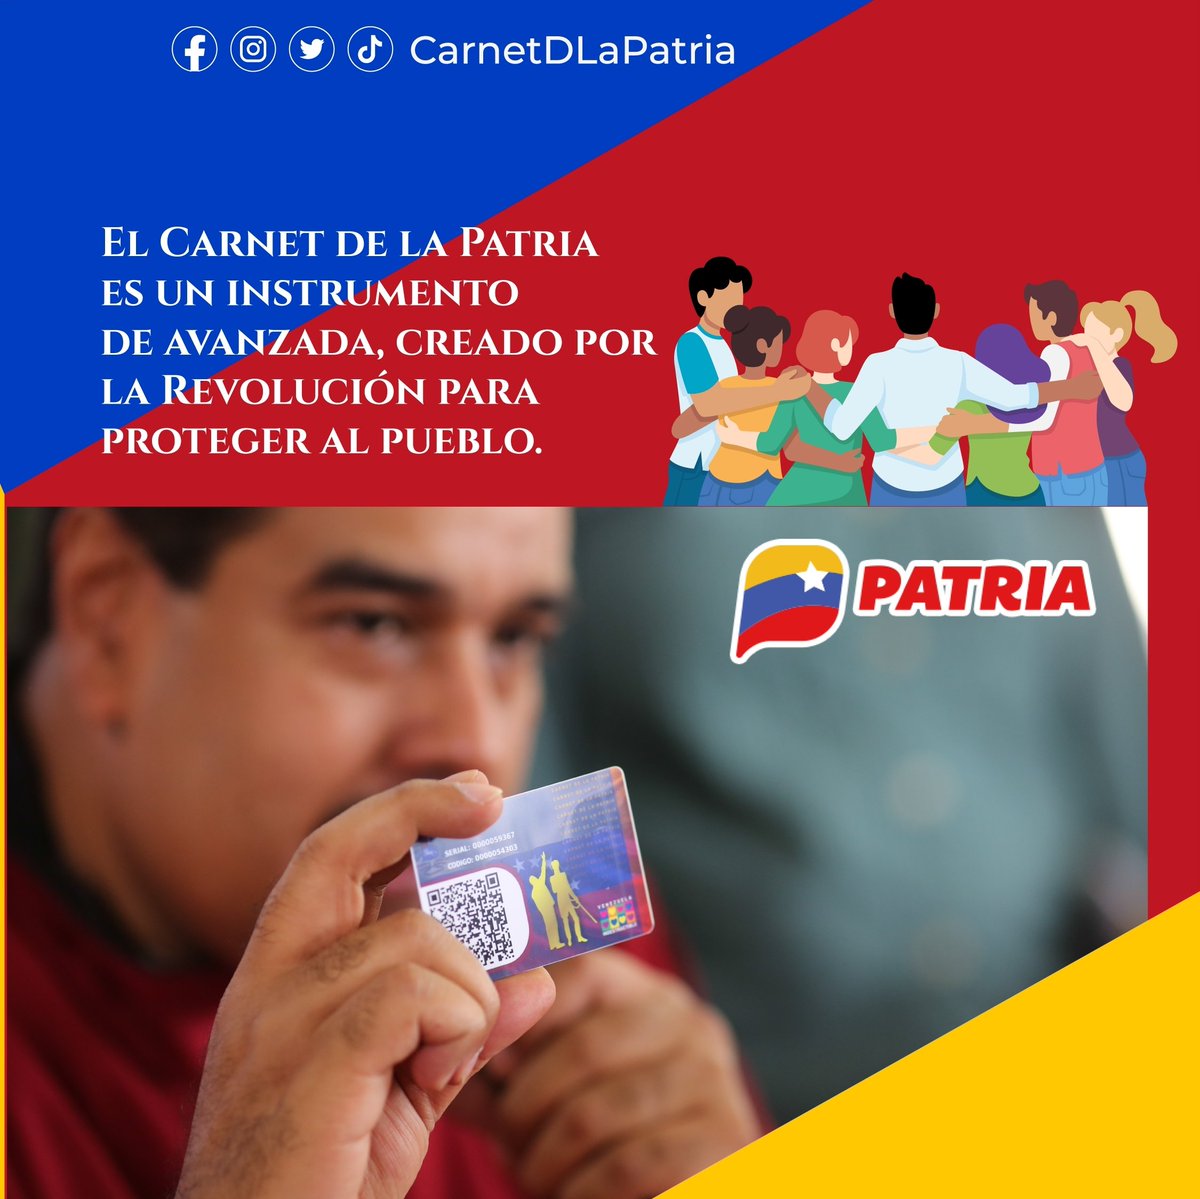 #Entérate El #CarnetDeLaPatria, es una política social impulsada por el Presidente de la República Bolivariana de Venezuela, @NicolasMaduro, para garantizar a la población, apoyo y protección social personalizada. #VivirYProtegerAlPueblo #25May